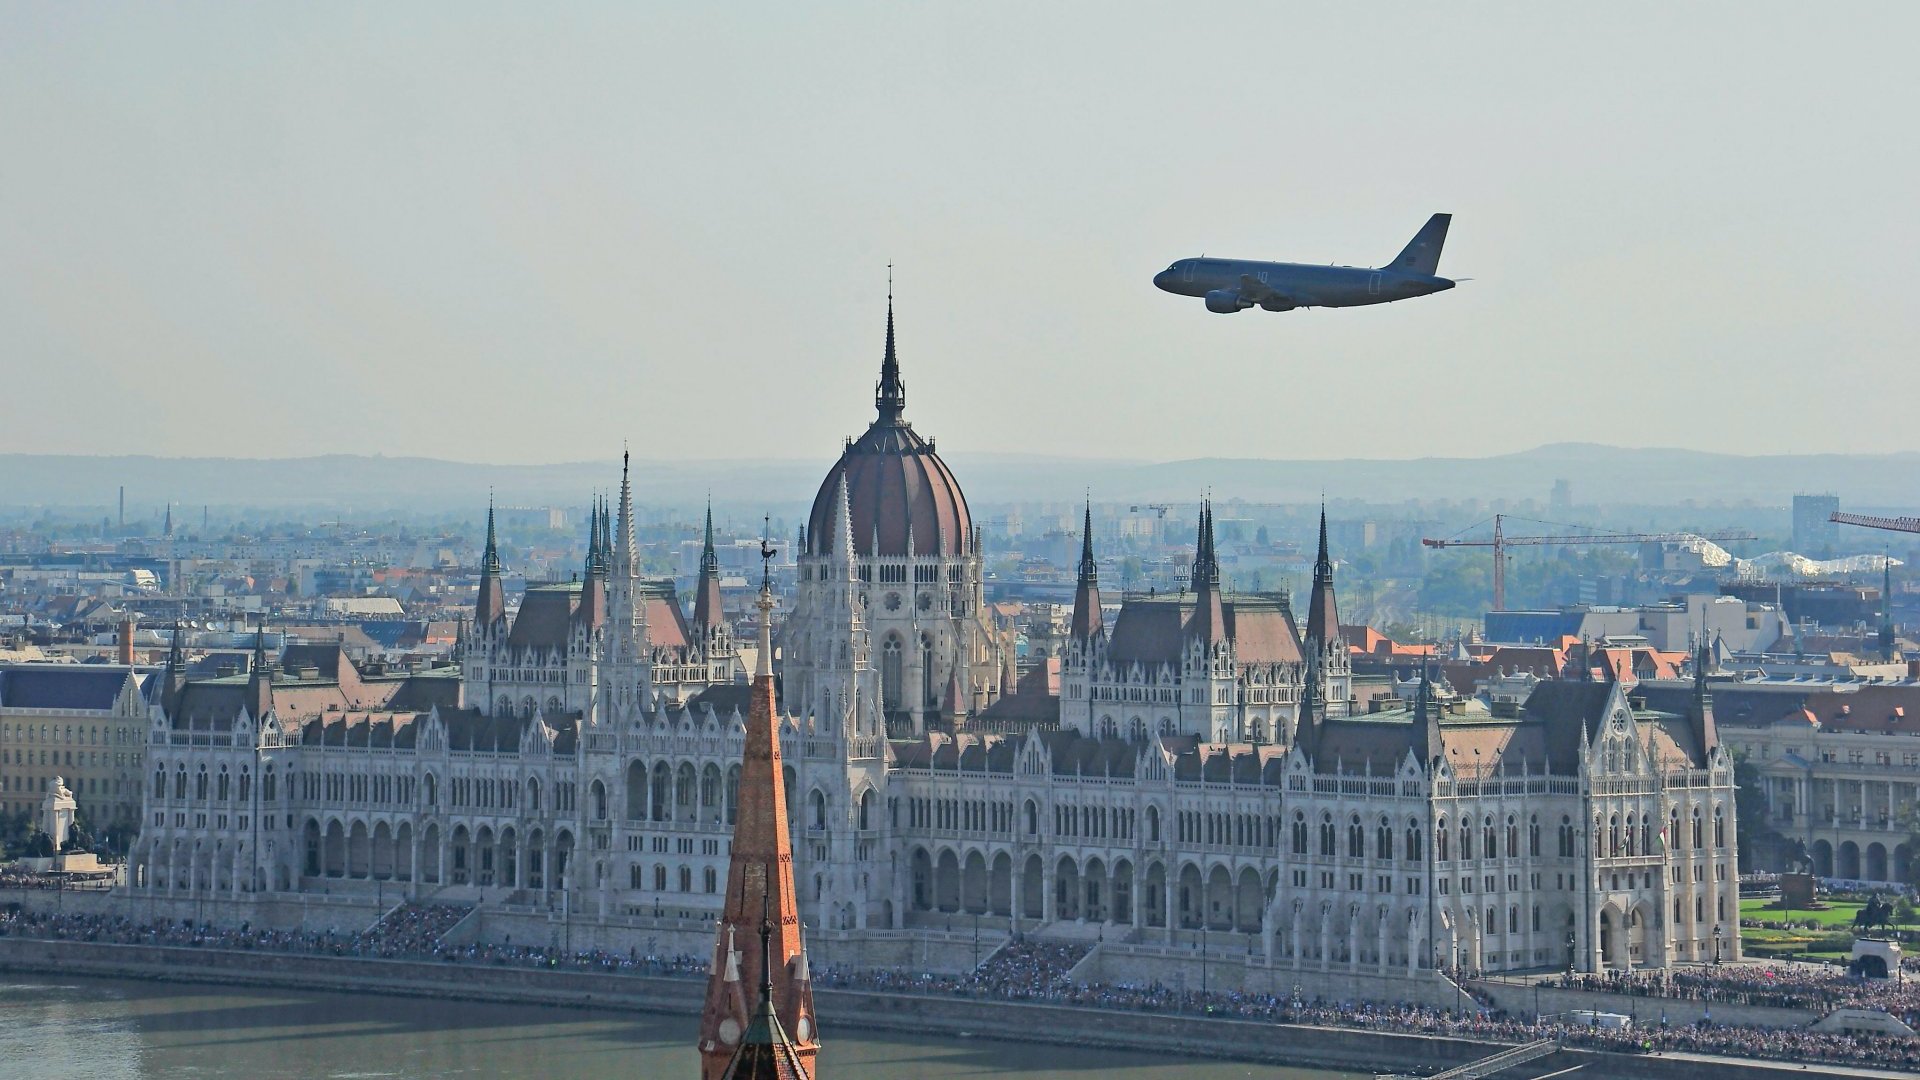 A Magyar Honvédség A319 szállító repülõgépének díszelgõ áthúzása a Duna felett az államalapítás ünnepe alkalmából rendezett légi parádén, a háttérben az Országház épülete 2023. augusztus 20-án